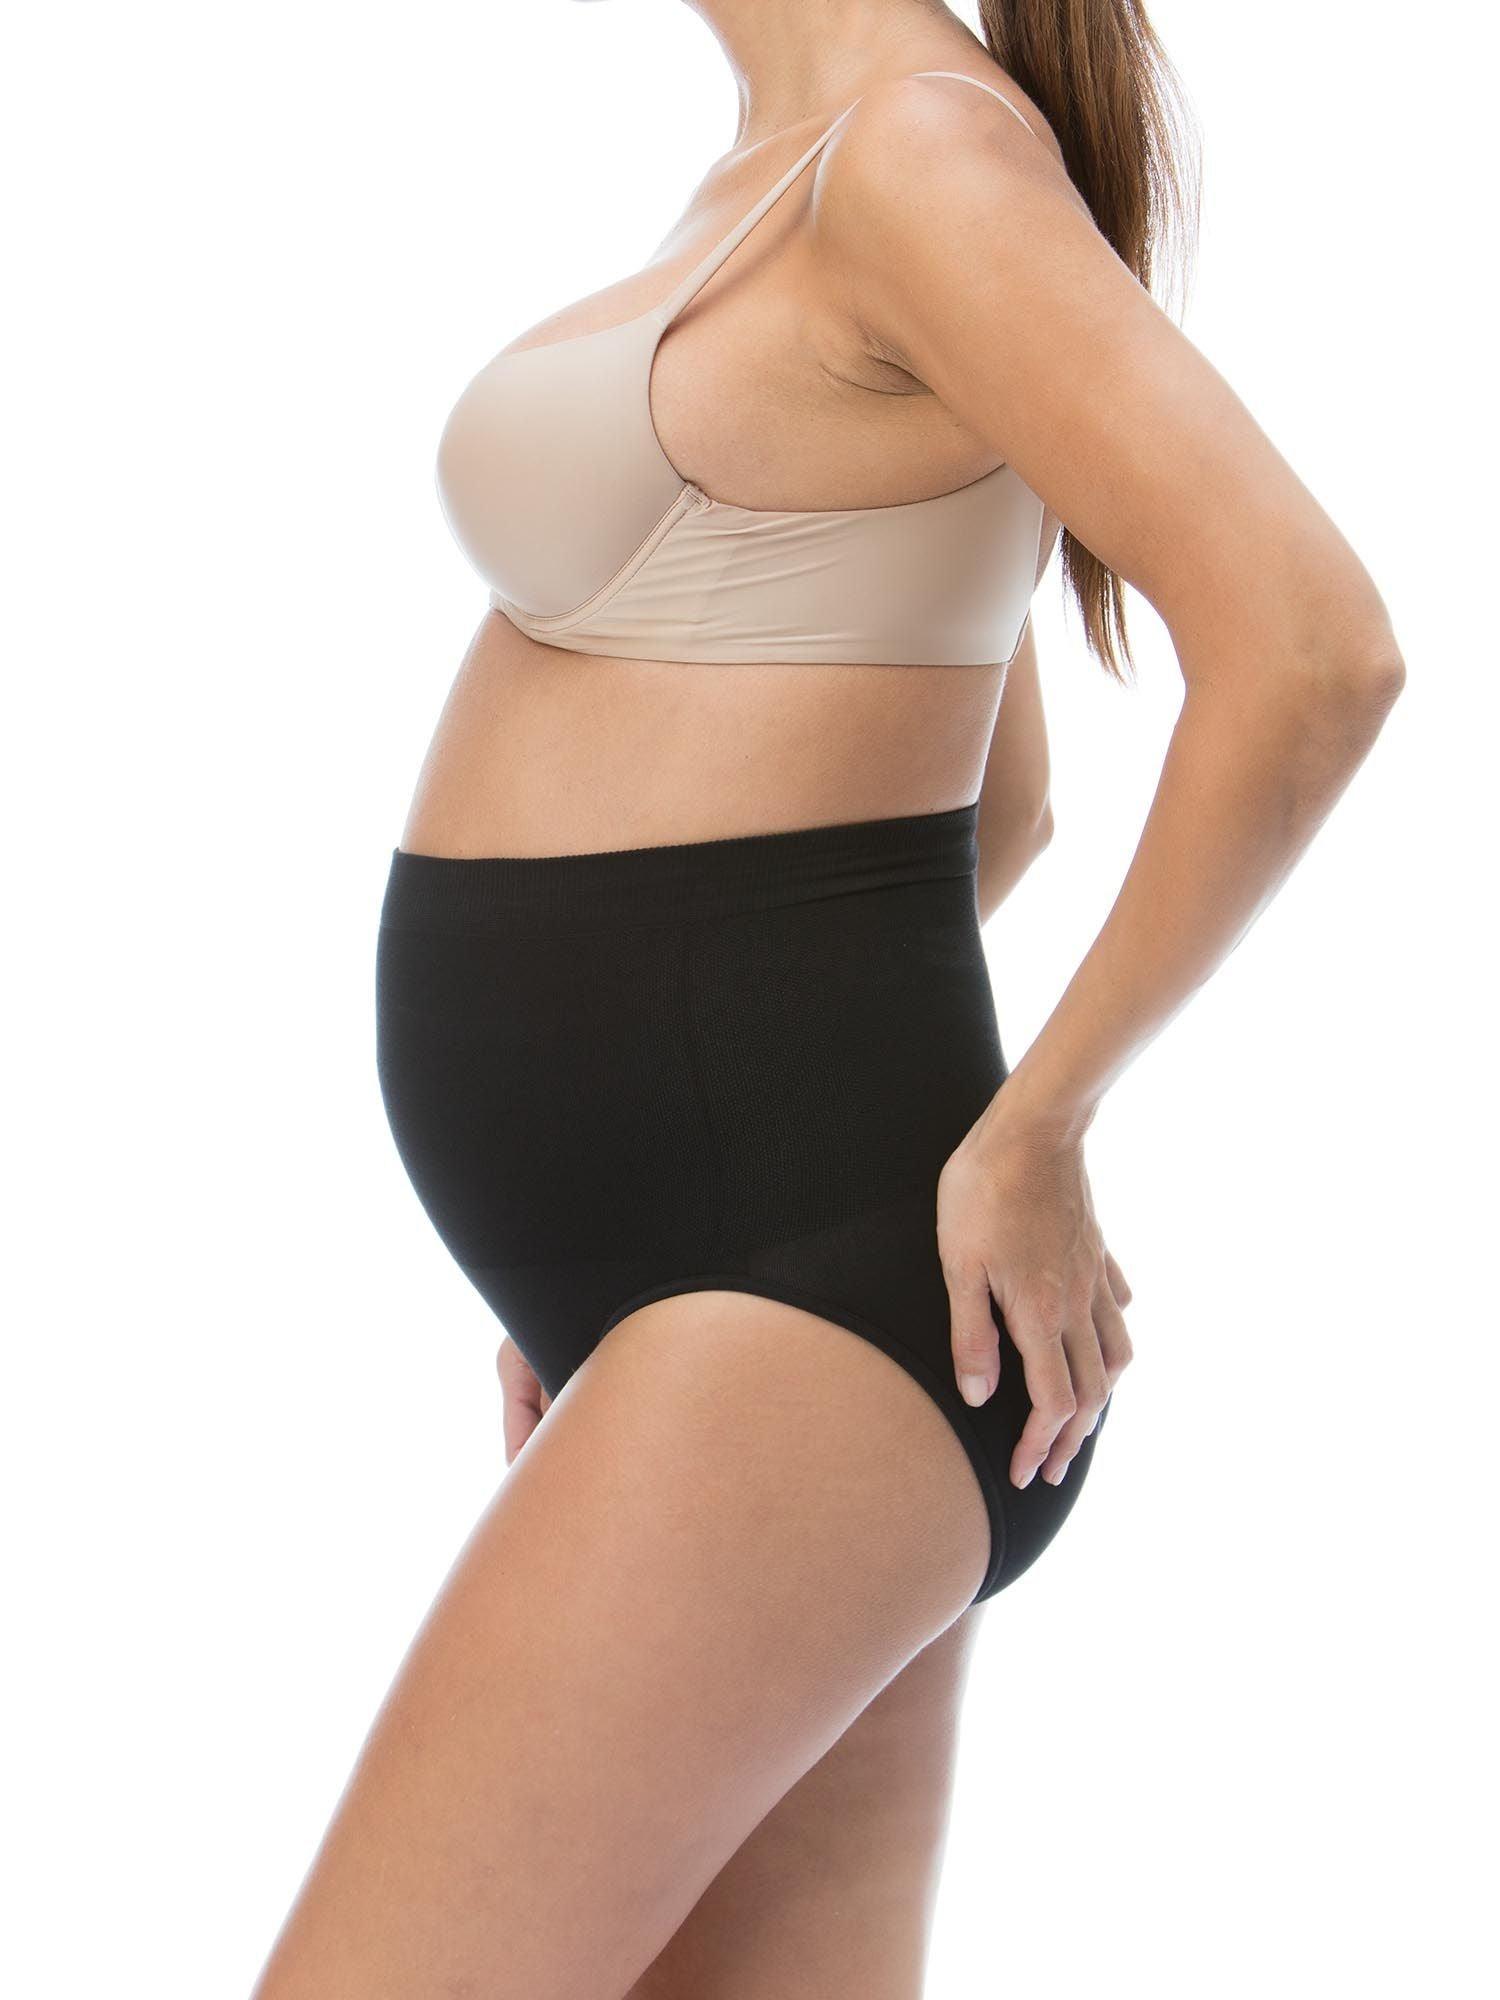 Cotton high-waist postpartum control knickers - Wellness Shoppee